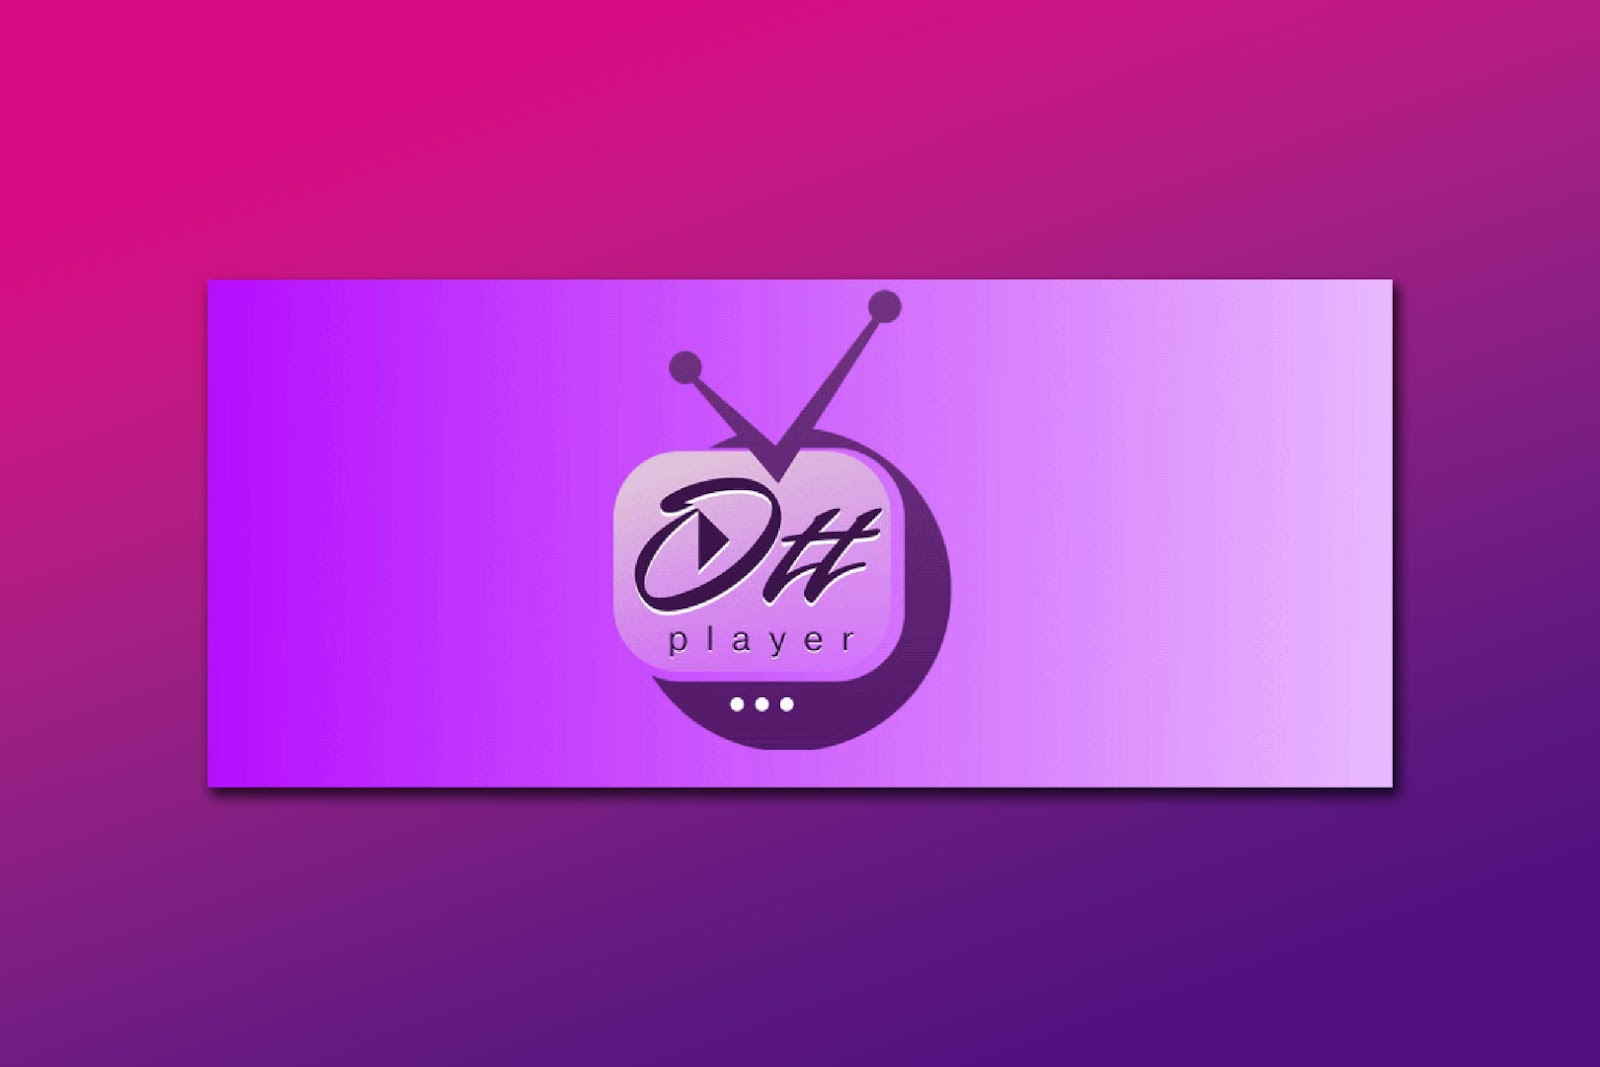 OTT - Player Best App For Apple TV